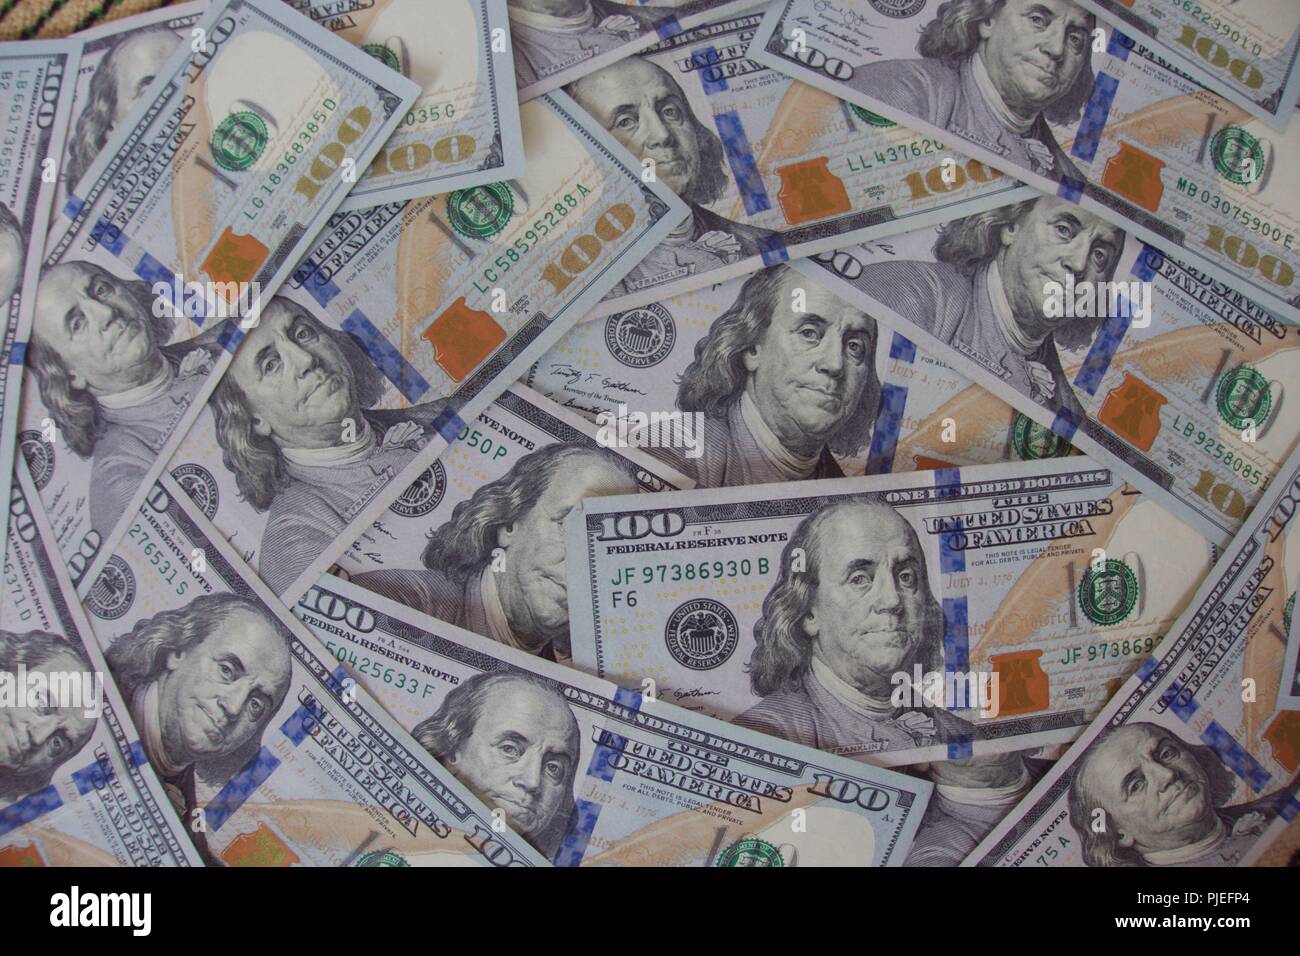 $ 100 Rechnungen US-Währung mit dem Gesicht von Benjamin Franklin, einem sehr berühmten amerikanischen Aber wer war nicht ein Präsident wie die Gesichter auf anderen US-Währung Stückelung. Stockfoto